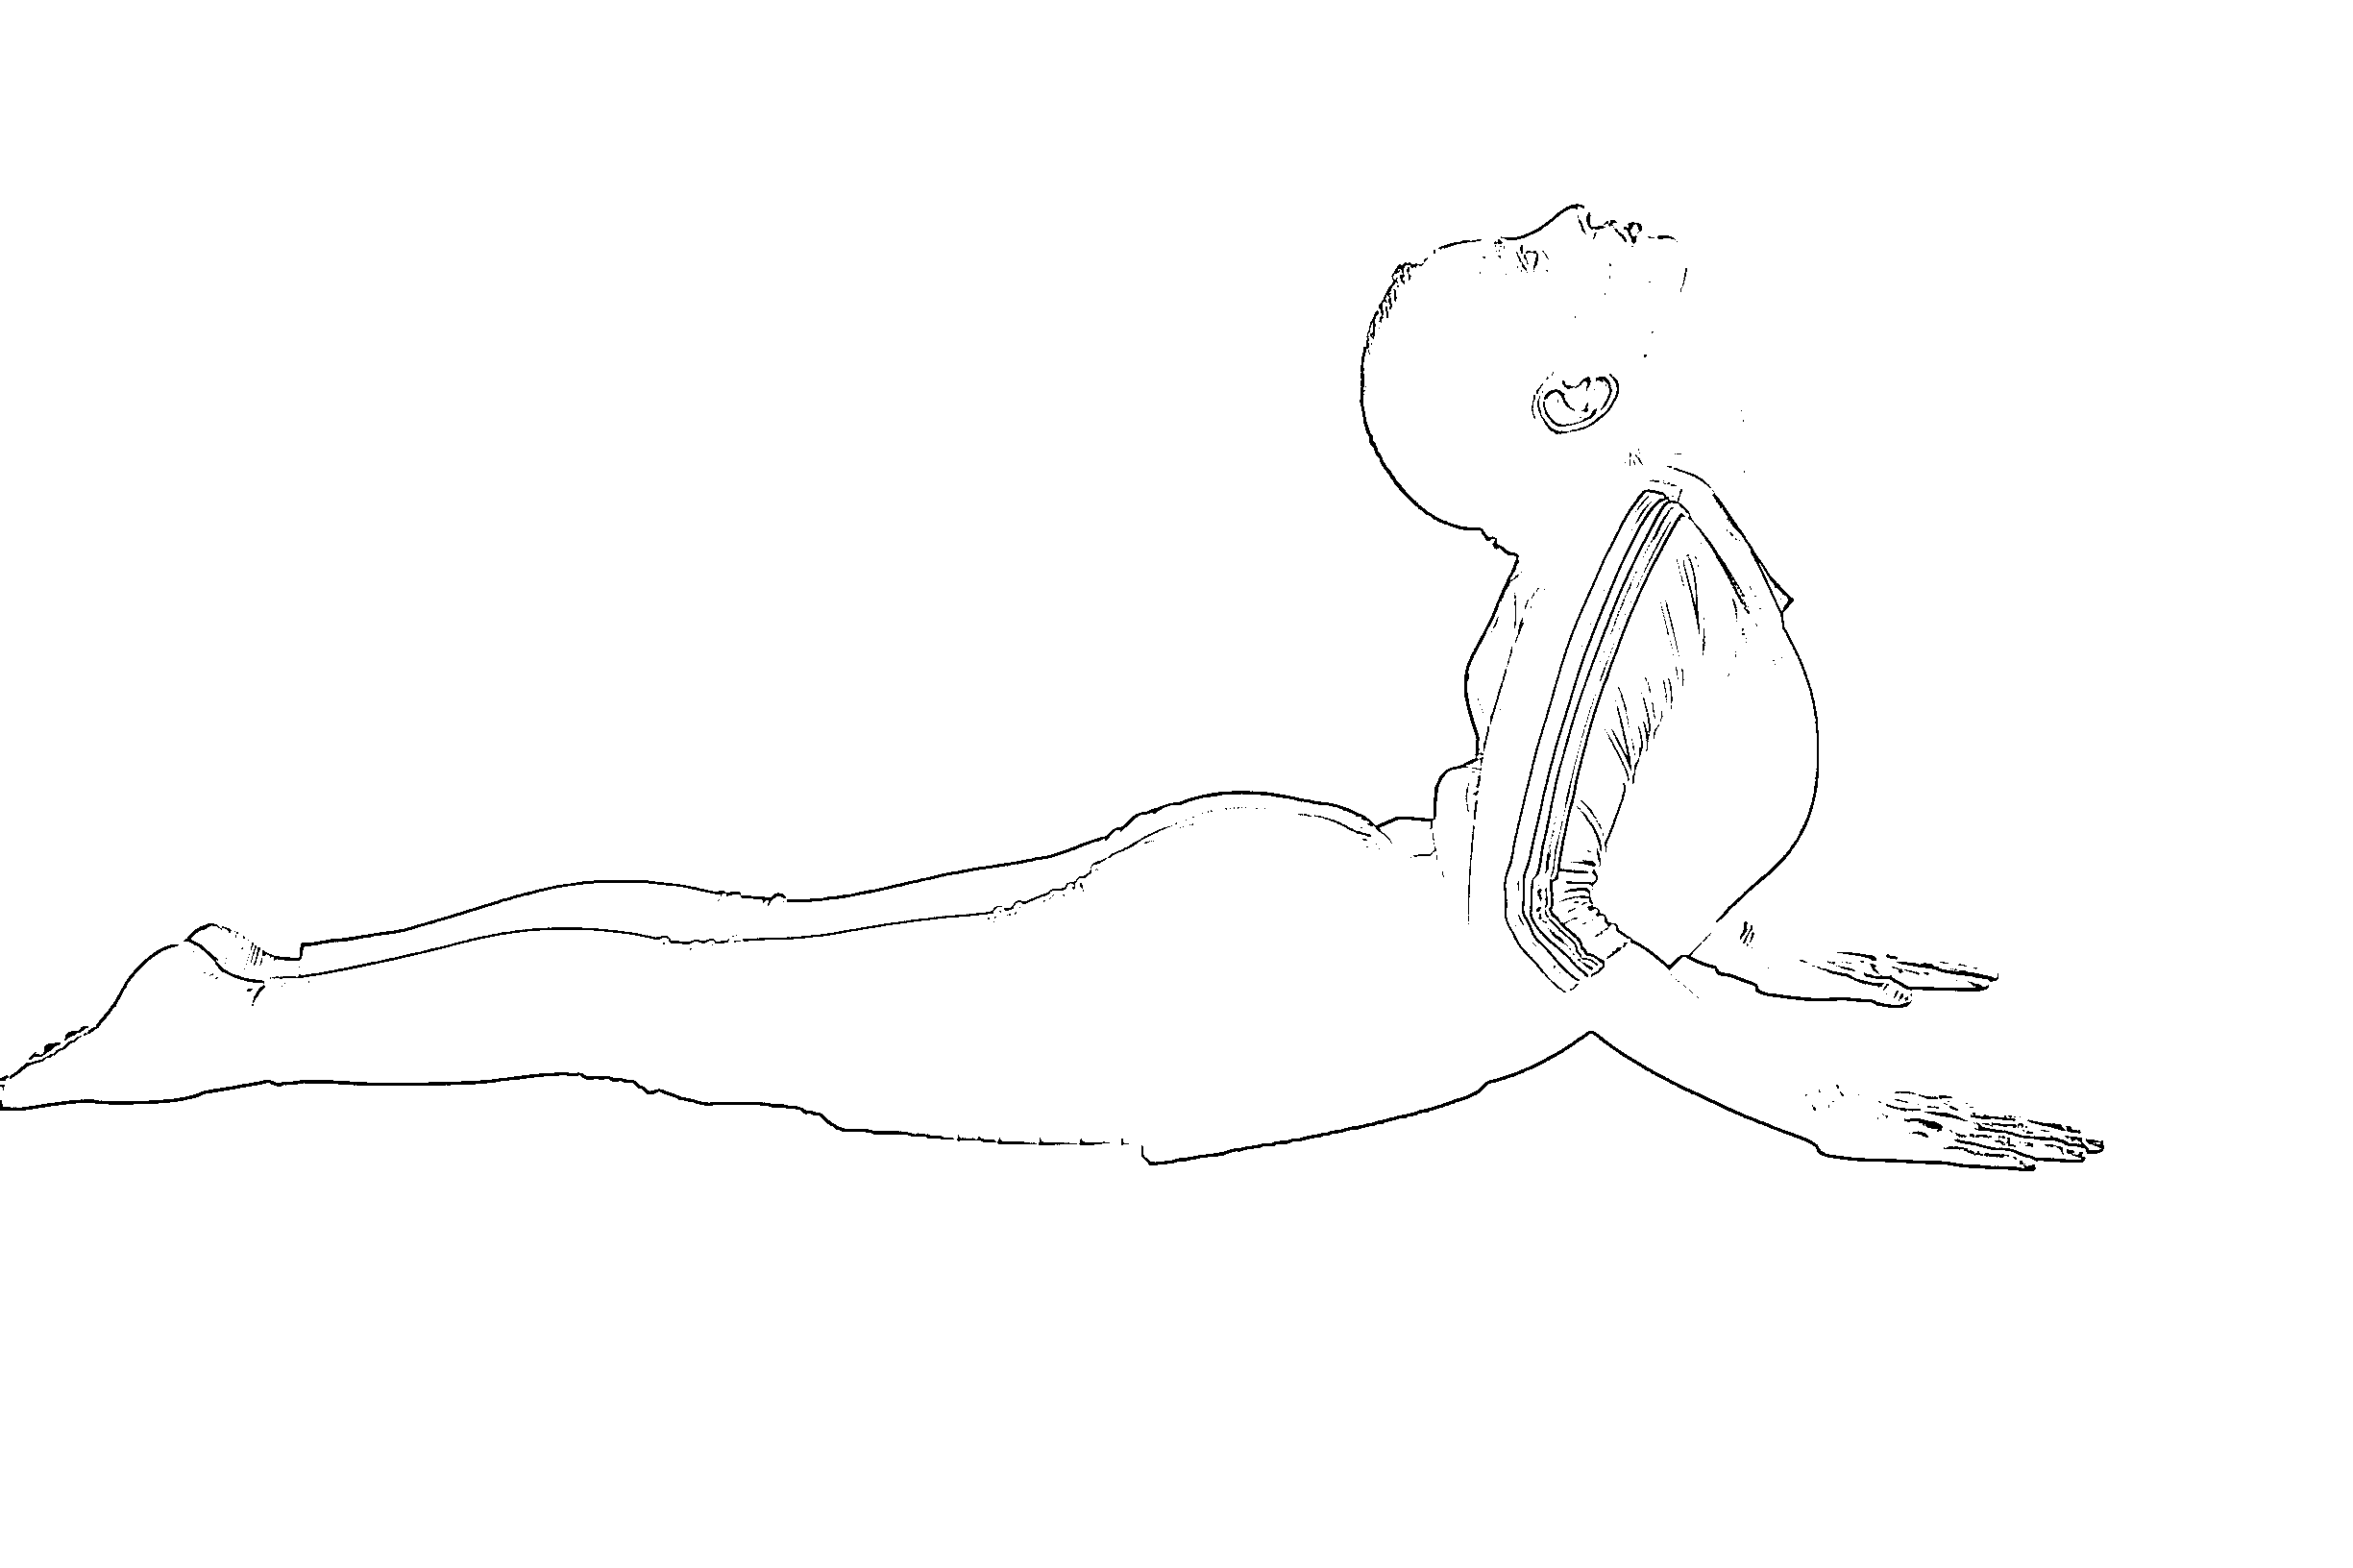 Cobra pose for cervical spondylosis